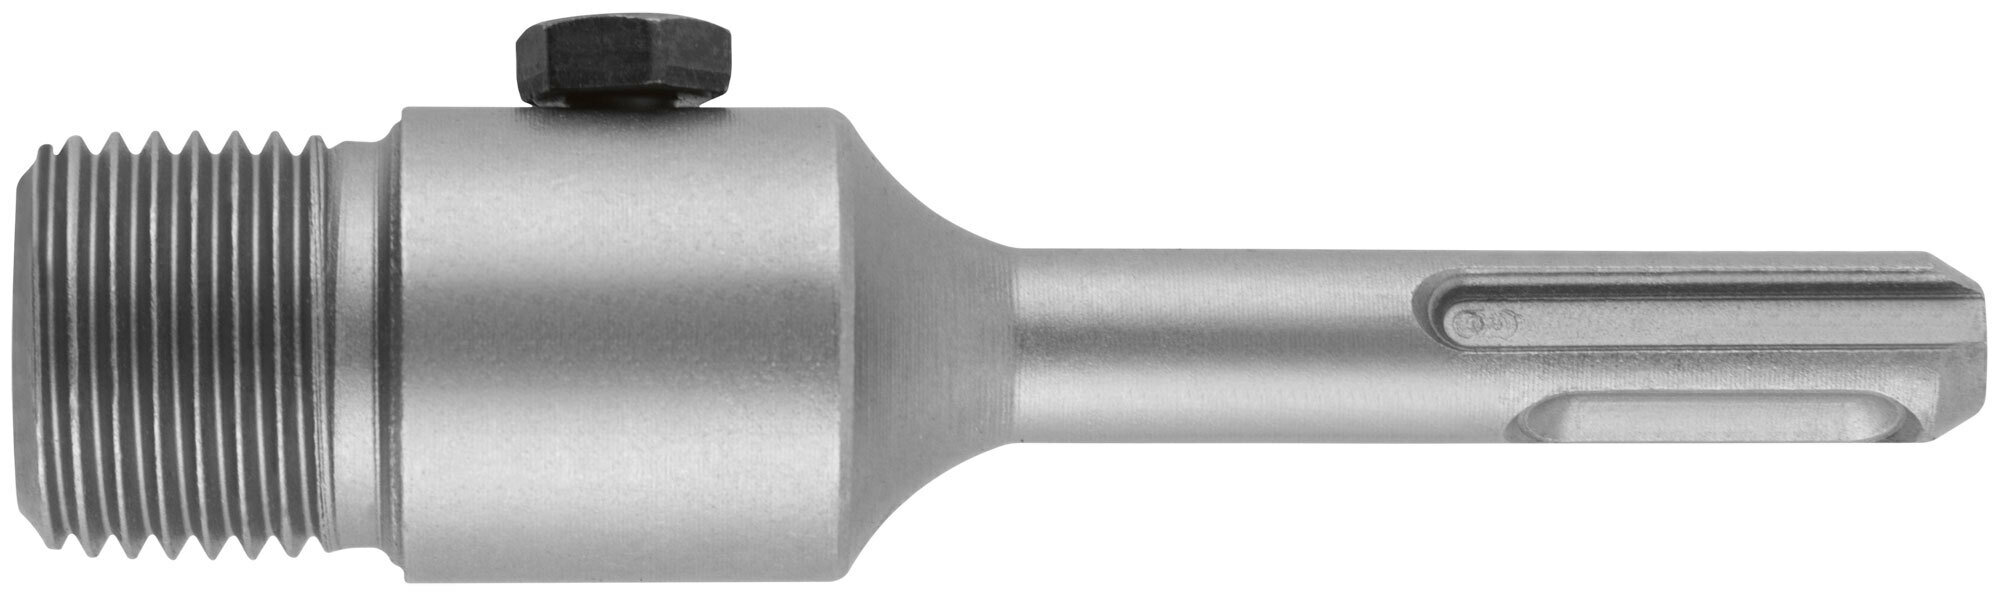 Удлинитель с хвостовиком SDS-PLUS для коронок по бетону резьба М22 длина 100 мм 33451